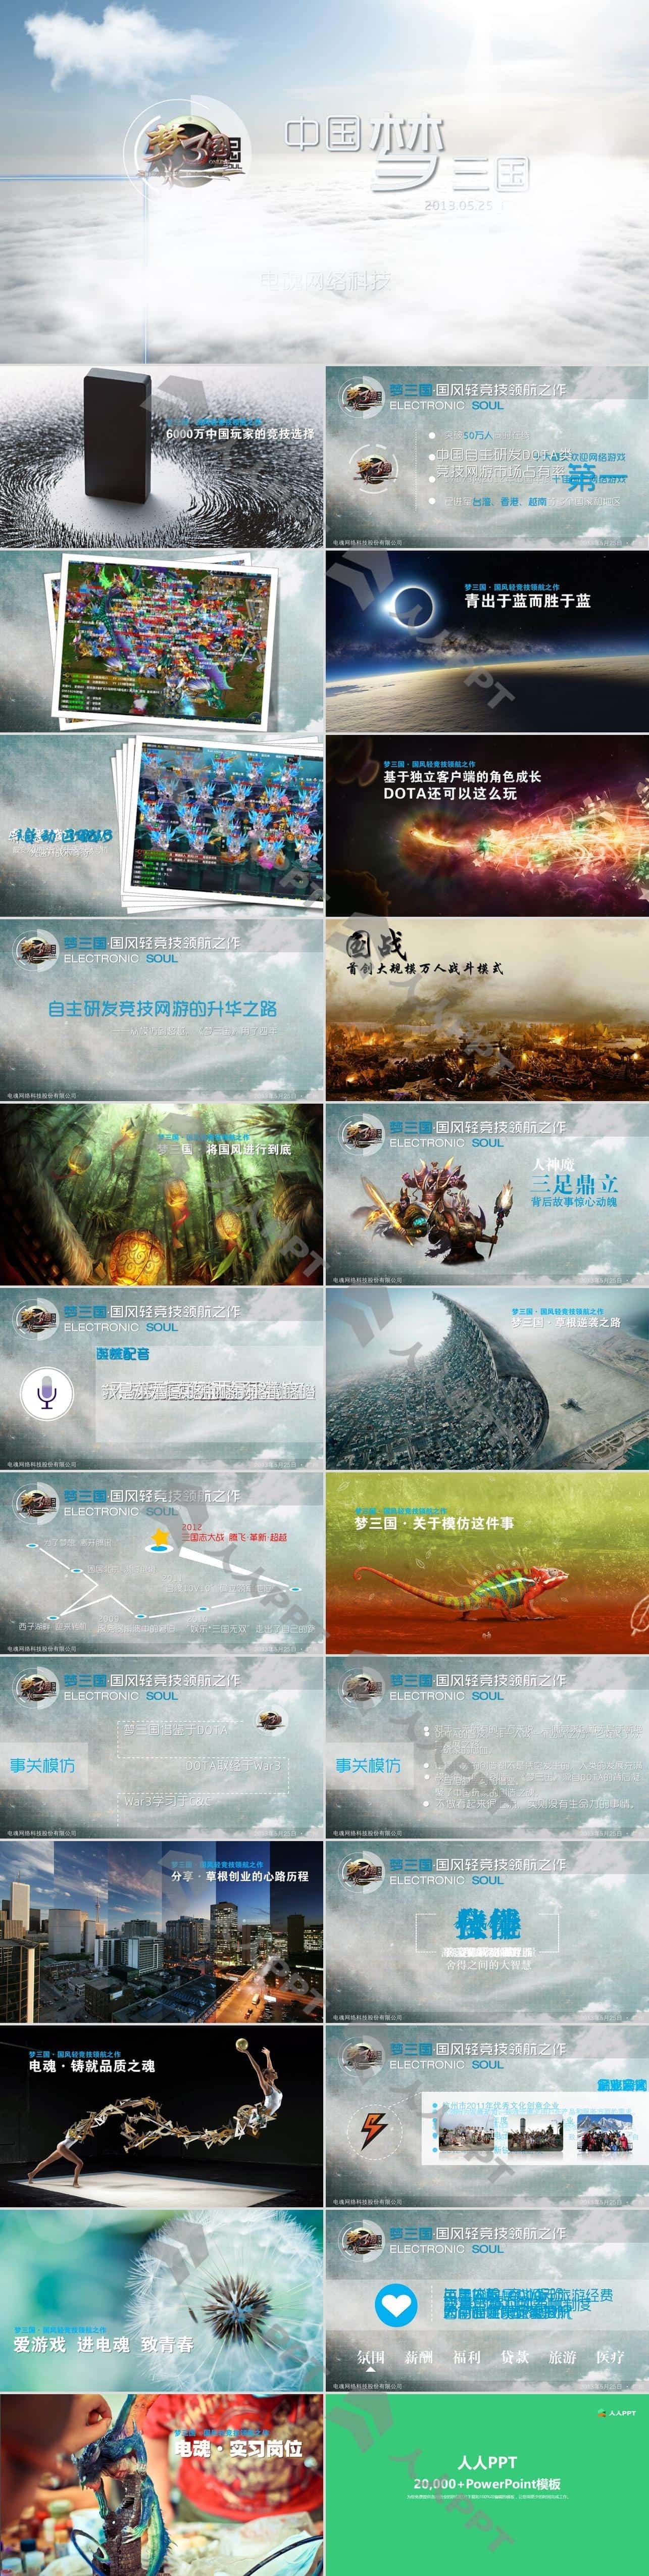 中国梦 梦三国――游戏主题PPT动态宣传影片长图